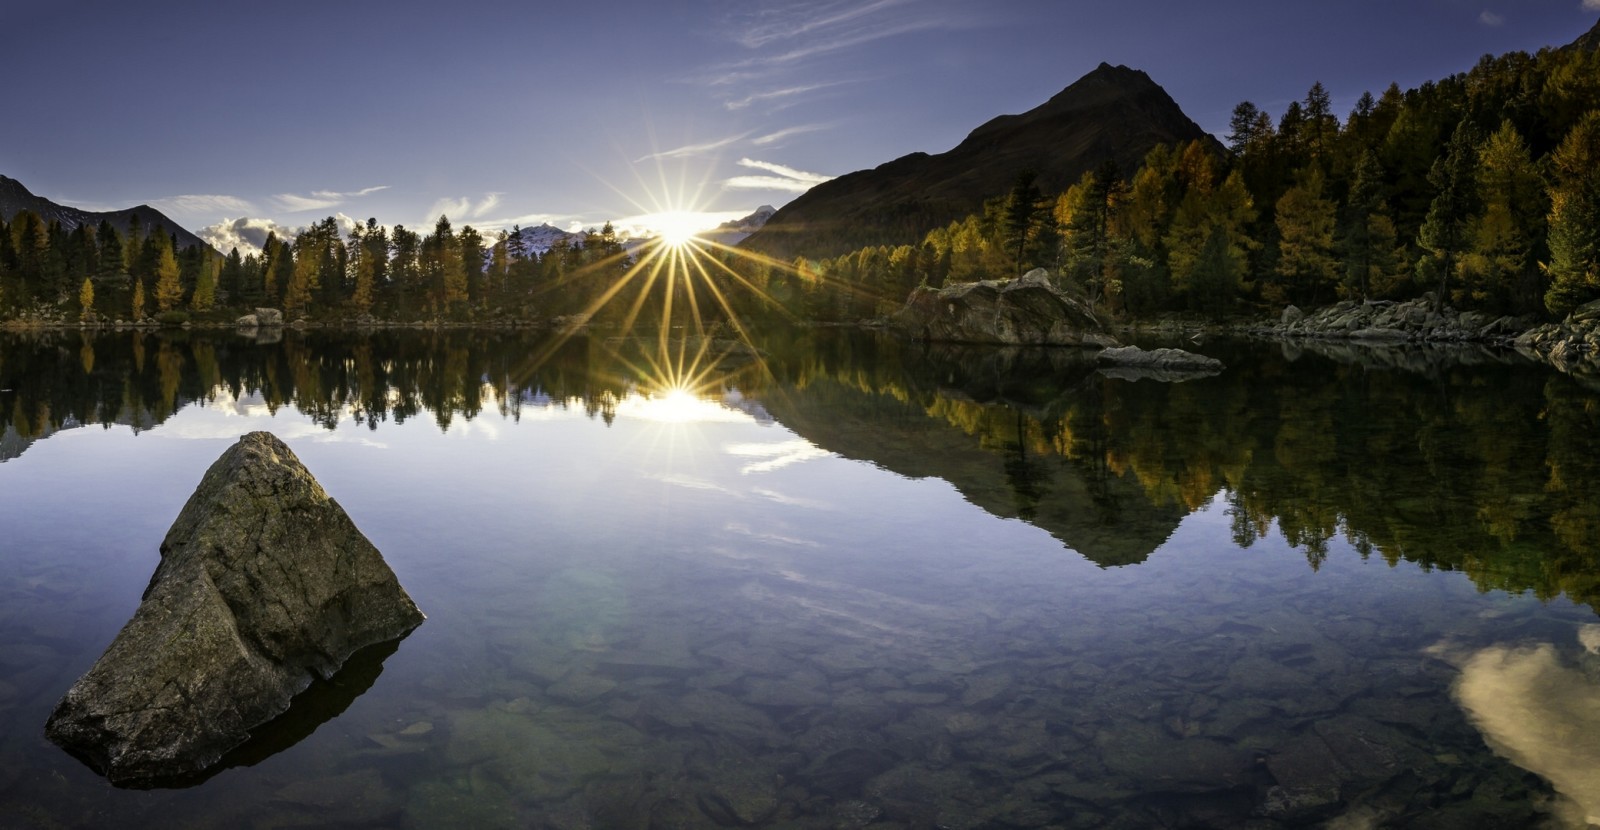 ฤดูใบไม้ร่วง, ประเทศสวิสเซอร์แลนด์, ทะเลสาป, พระอาทิตย์ตกดิน, การสะท้อนกลับ, หิน, ภูเขา, ด้านล่าง